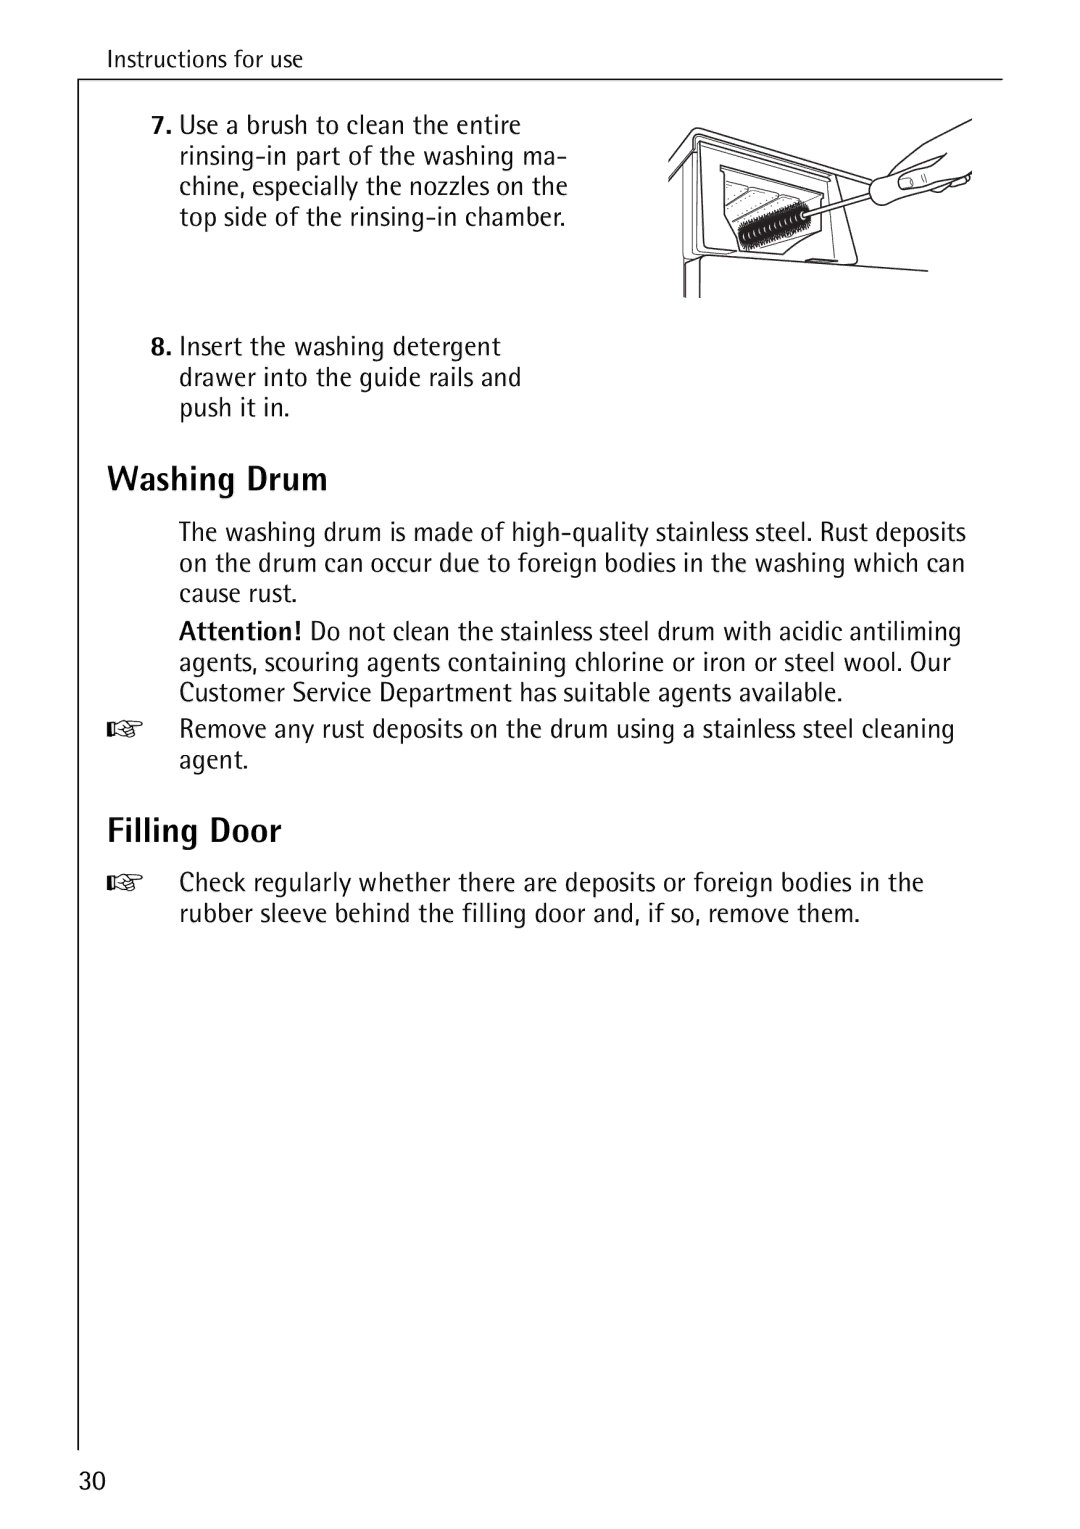 AEG 82730 manual Washing Drum, Filling Door 